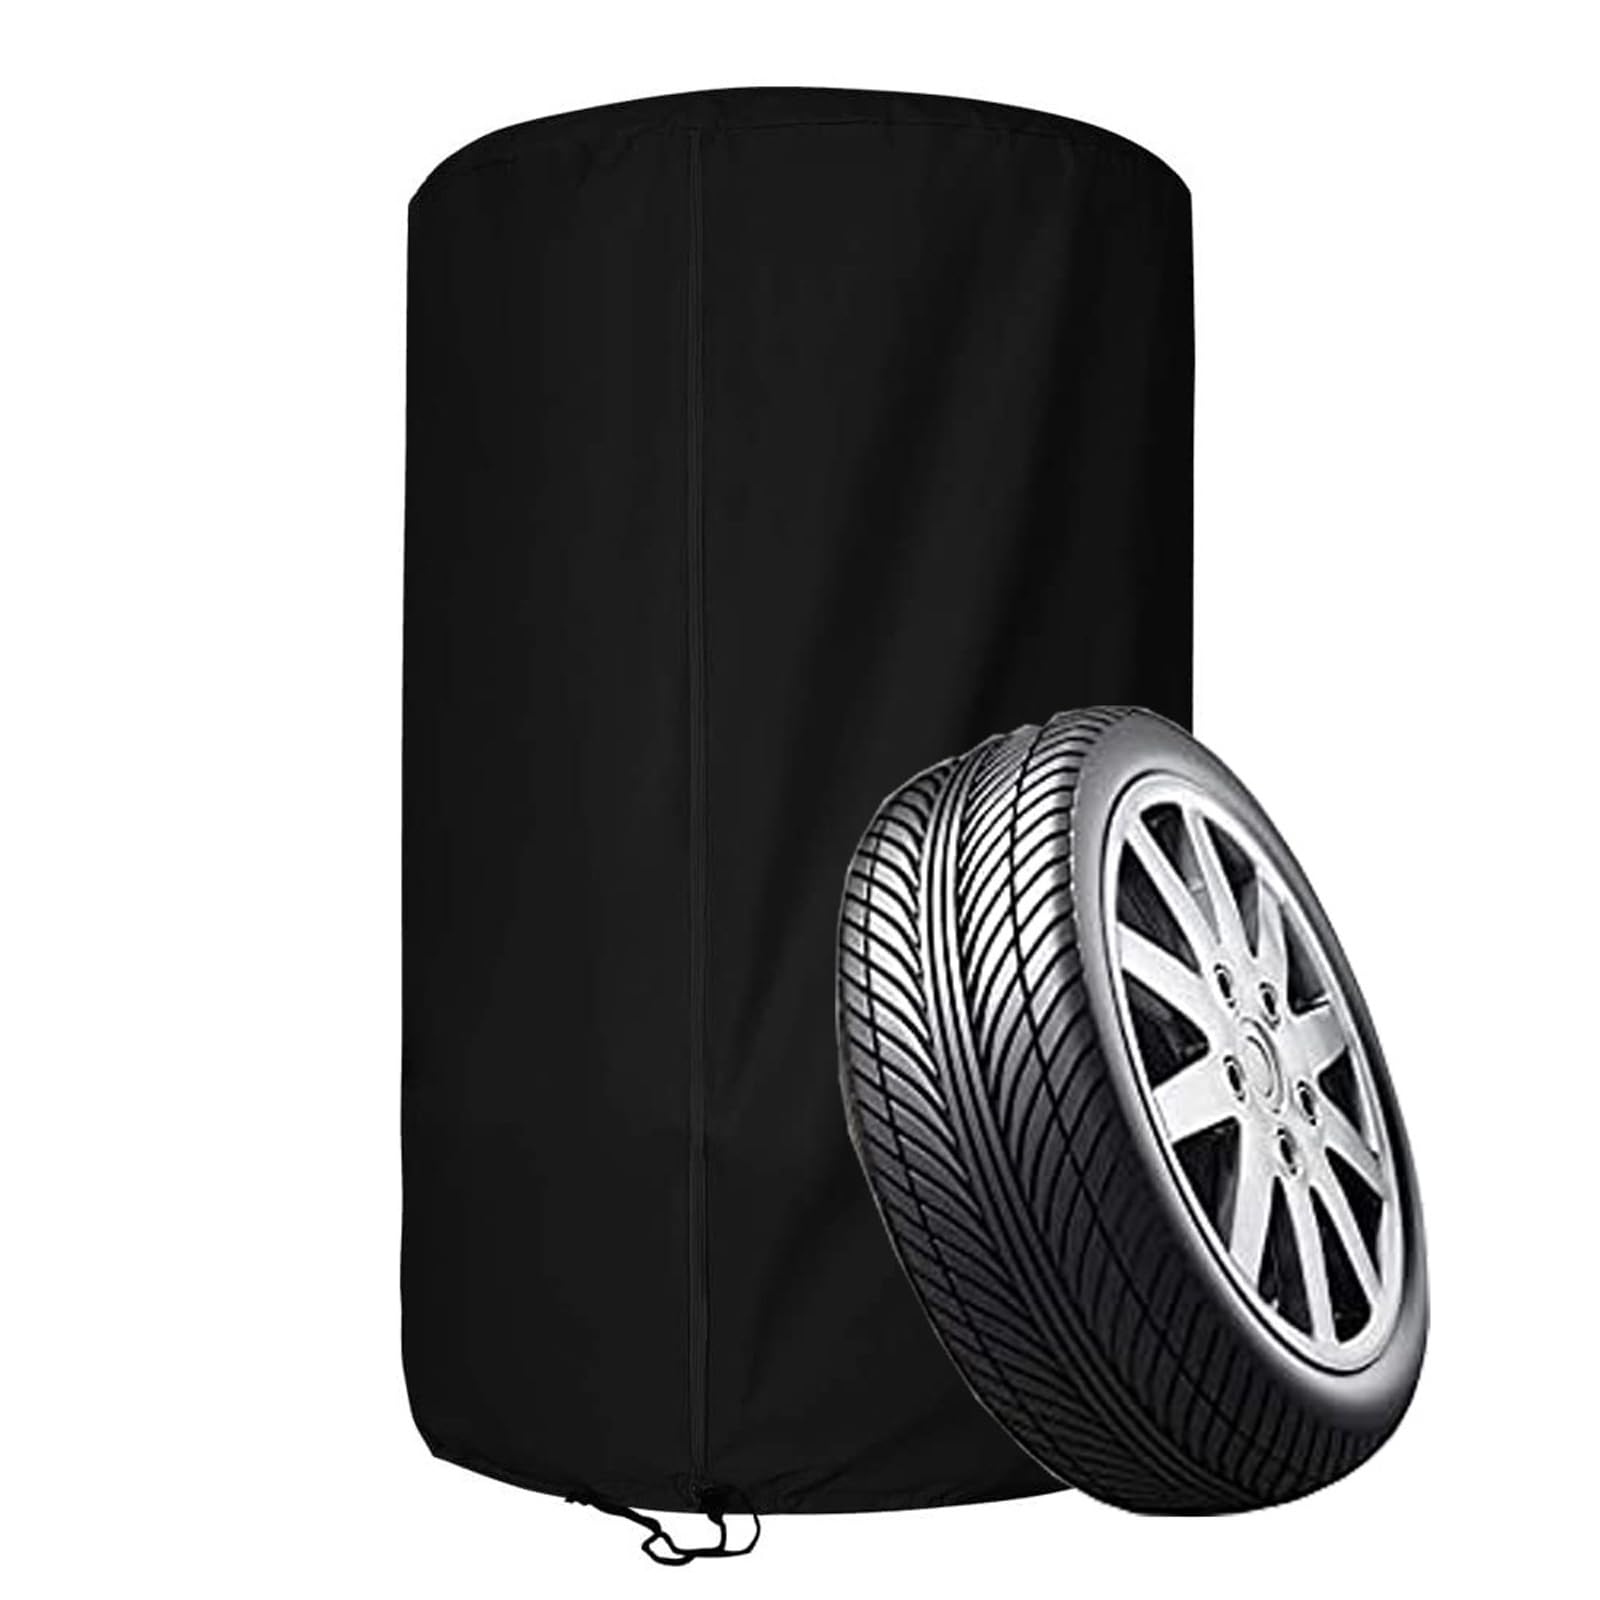 Reifenabdeckung für 4 Reifen, wasserdichte Reifenschutzhülle für 4 Autoreifen, 210D /420D OxfordAufbewahrungstasche für 4 Ersatzreifen mit Reißverschluss(Size:210D Oxford ：73 * 110cm,Color:Black) von Crysterris